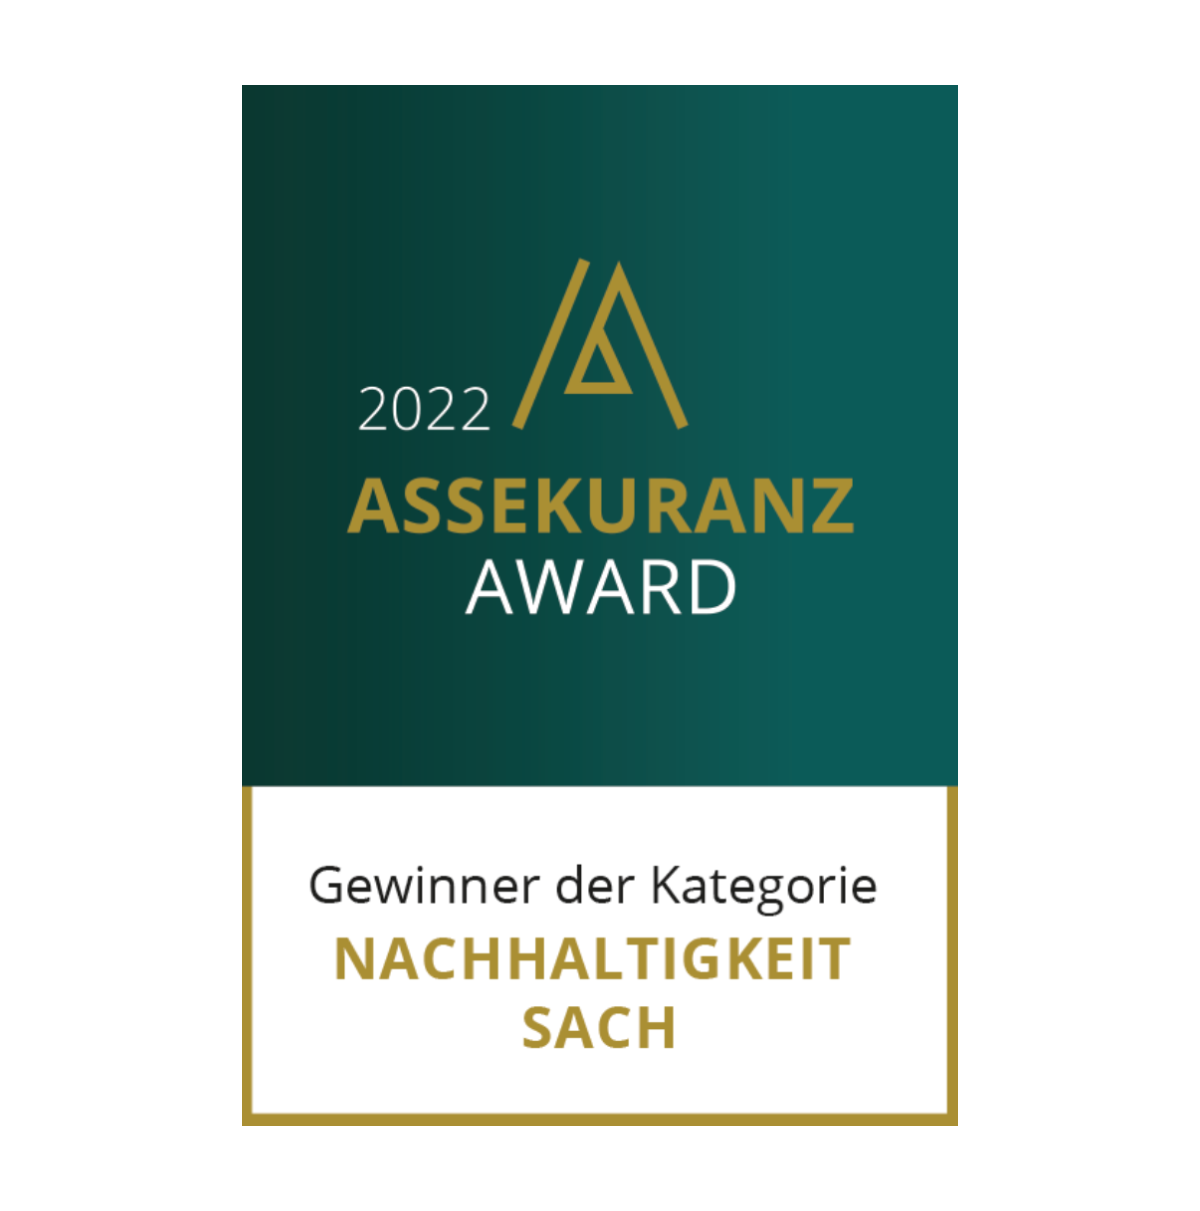 Assekuranz Award 2022: Gewinner der Kategorie Sach